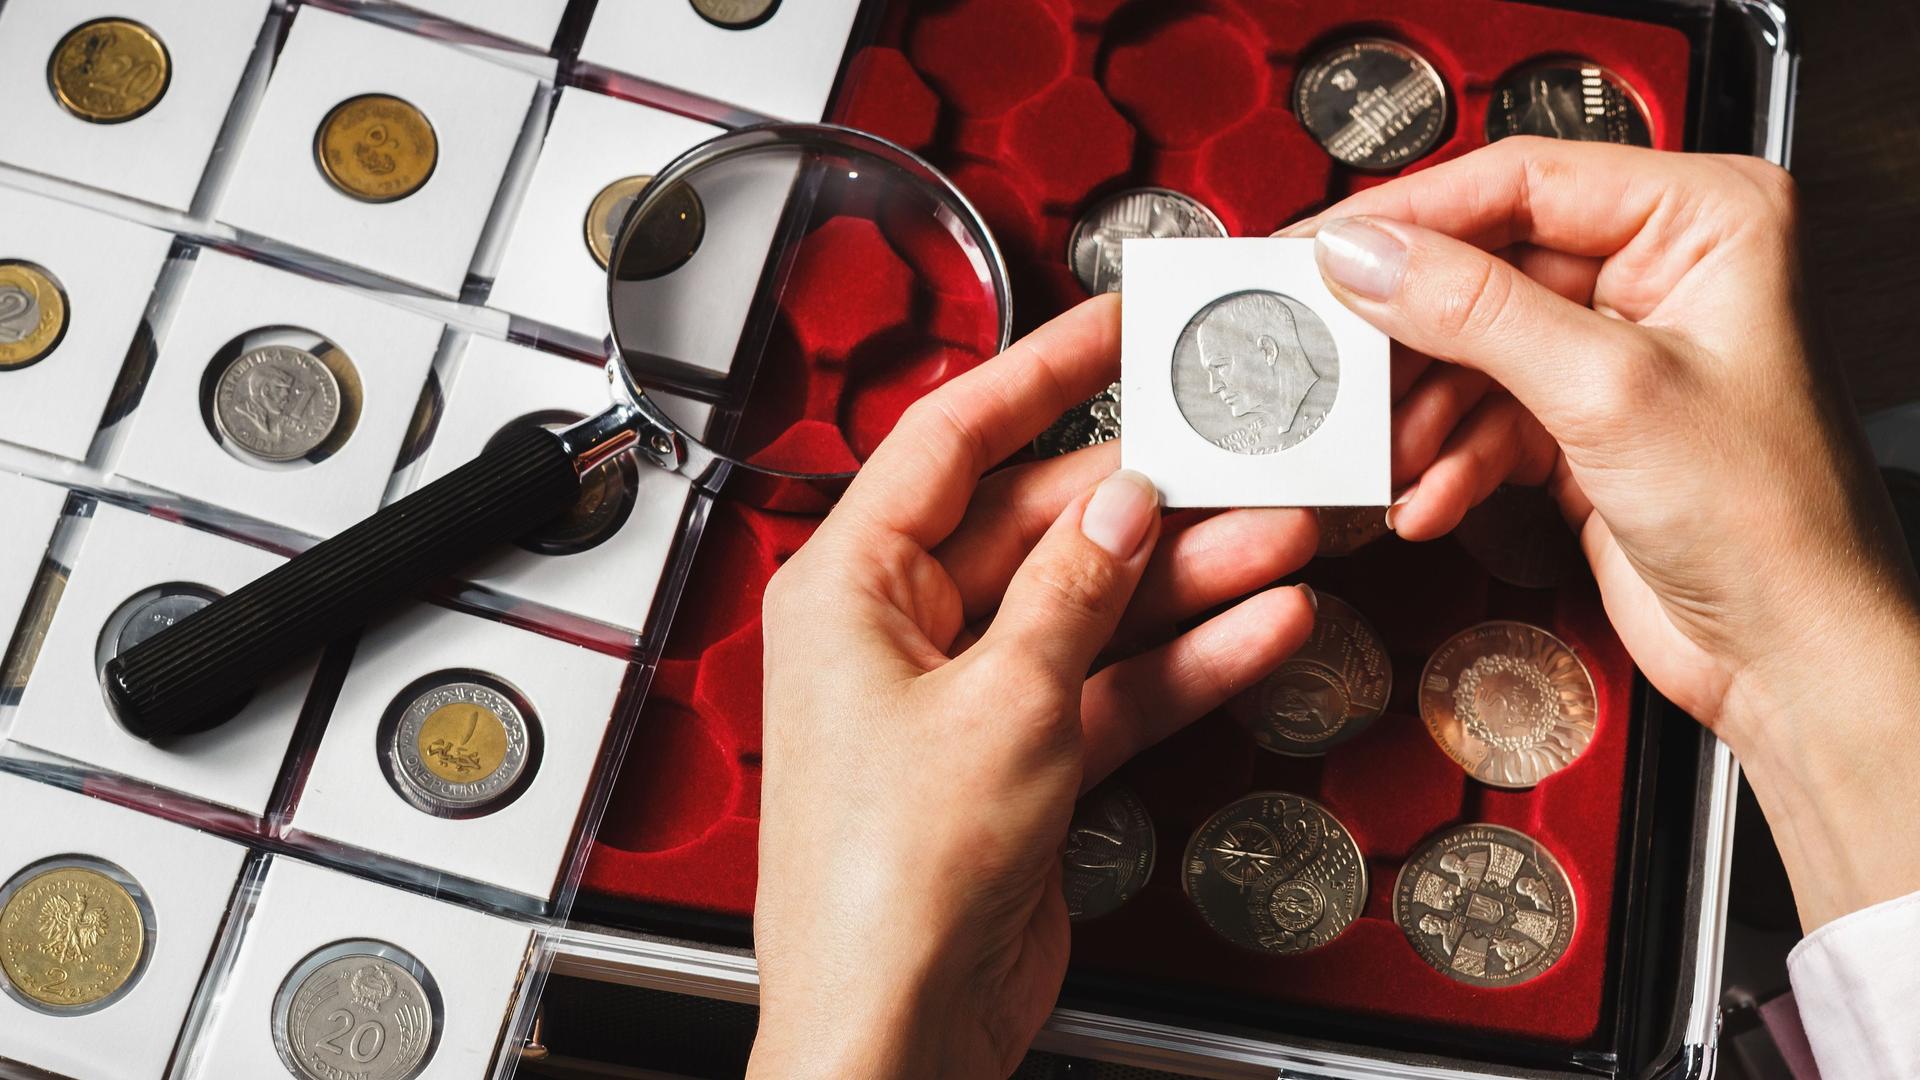 Nahaufnahme zweier Hände die eine eingepackte Sammelmünze halten. Links eine Lupe und Seite mit Münzen in einzelnen kleinen Taschen. Rechts eine Schachtel mit Sammelmünzen. 